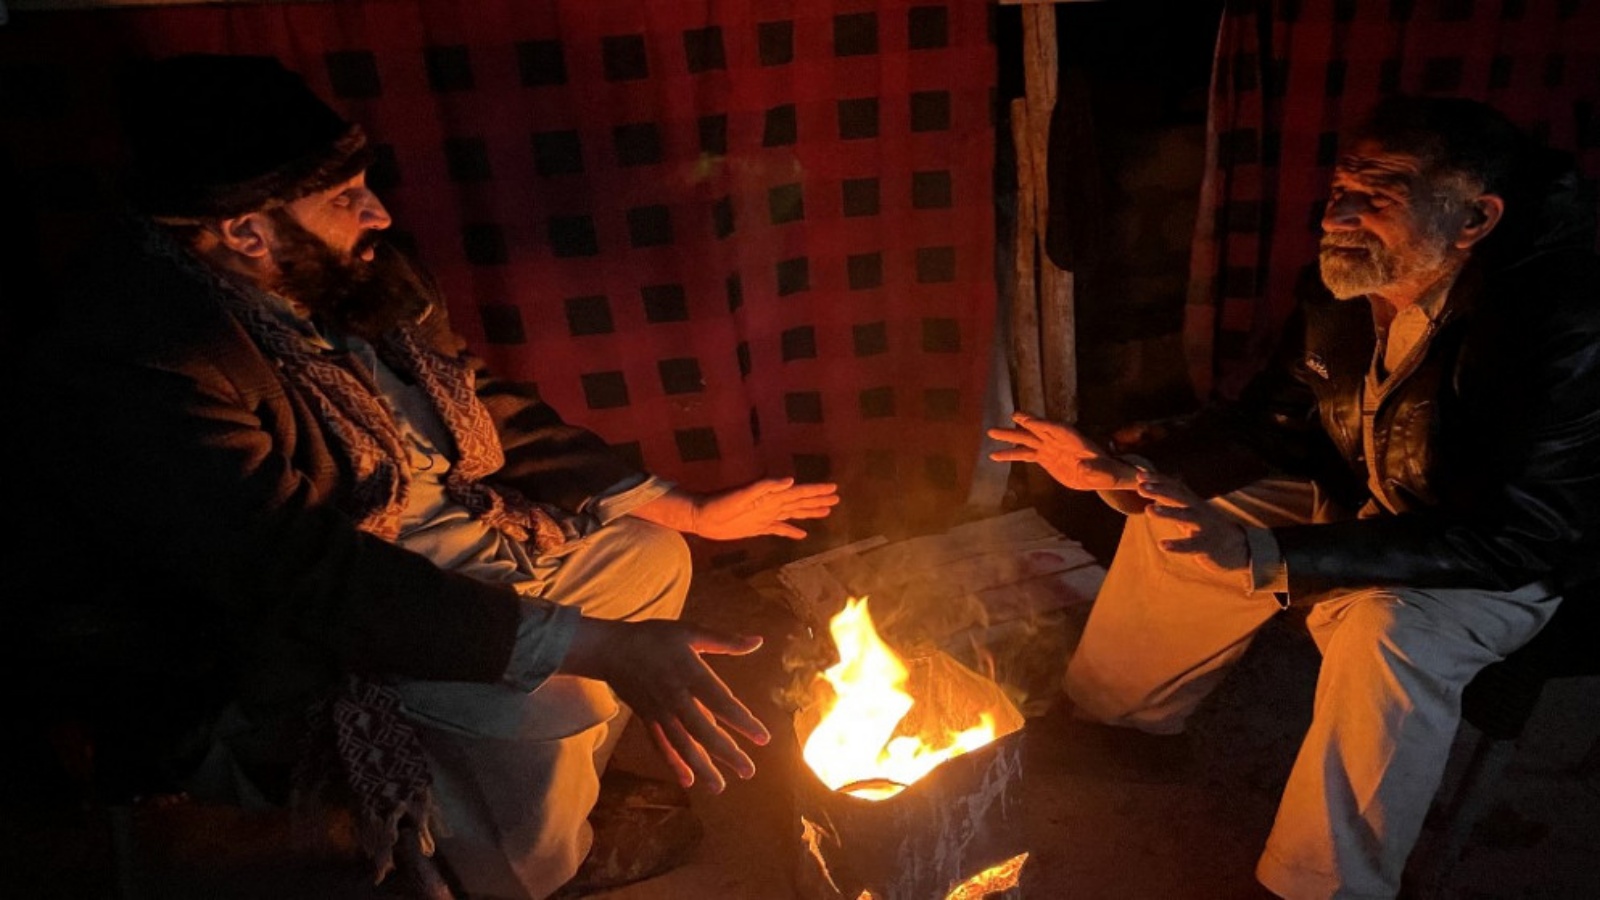 باكستانيون يشعلون نارًا لتدفئة أنفسهم أثناء انقطاع التيار الكهربائي في جميع أنحاء البلاد، في مظفر أباد 23 يناير 2023